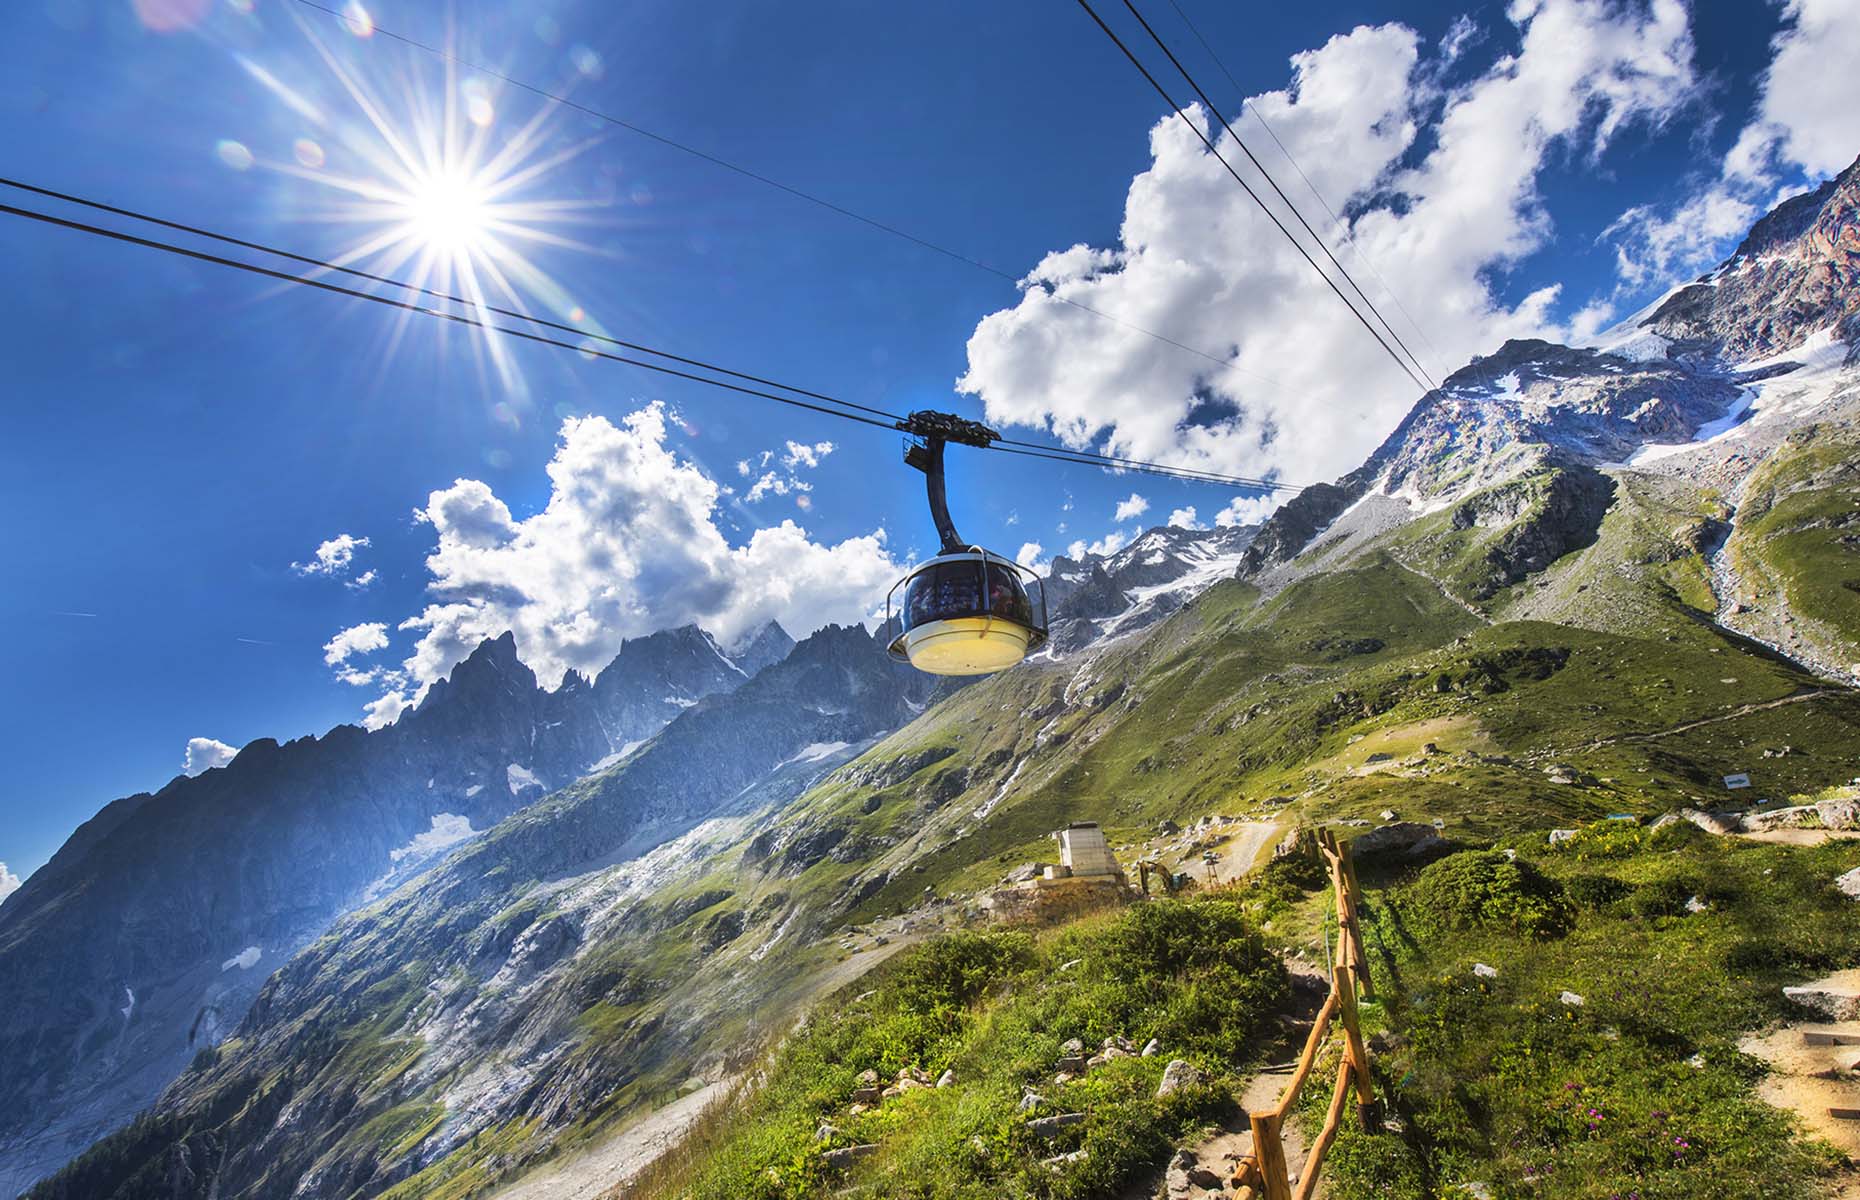 Skyway Monte Bianco (Image: Mirko_88/Shutterstock)